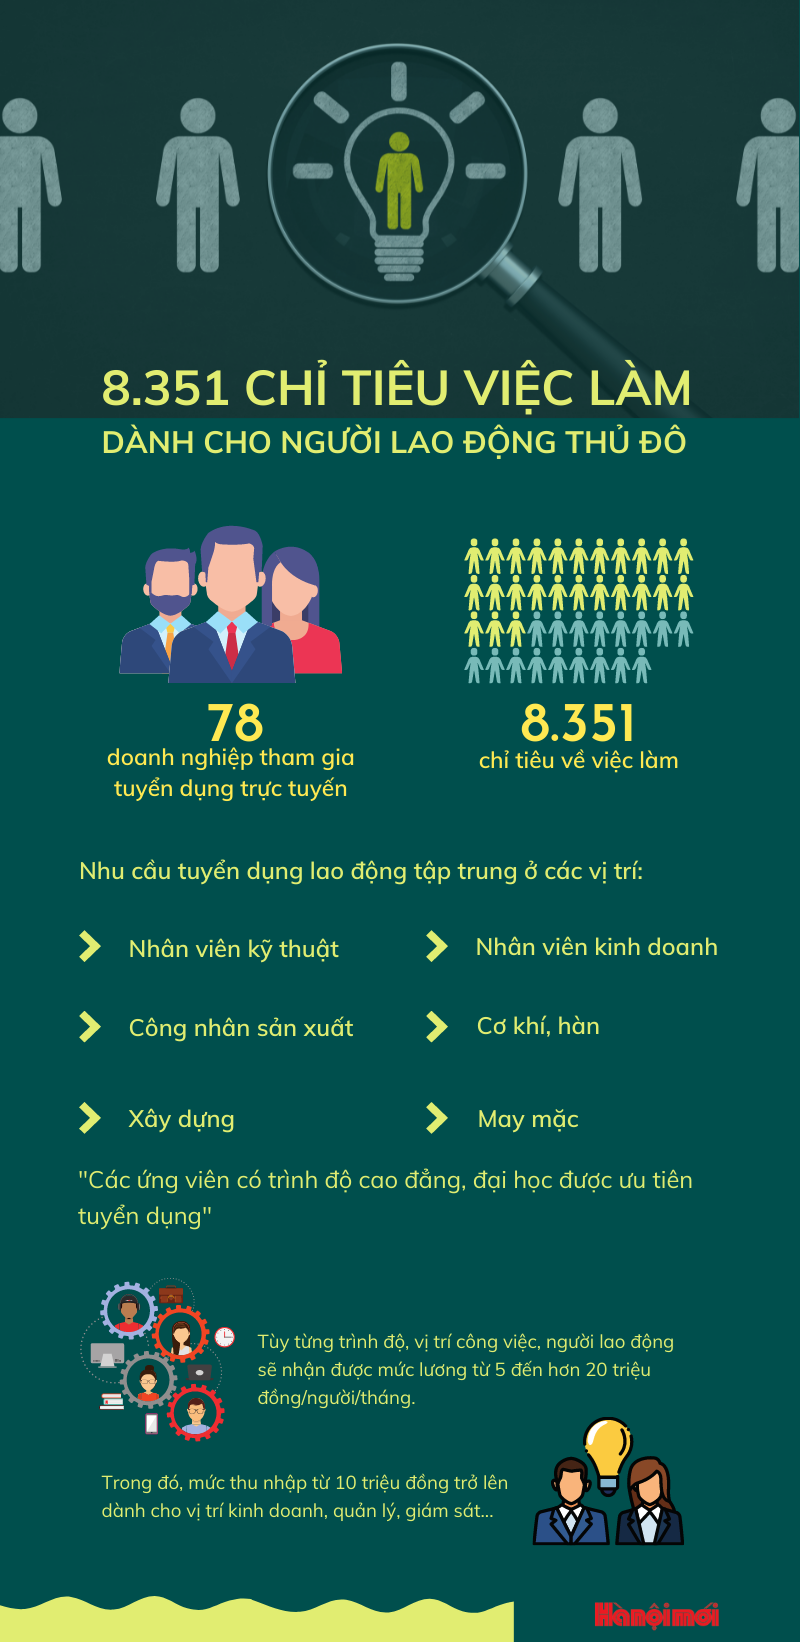 Người lao động Hà Nội được tuyển dụng với mức lương 20 triệu đồng/tháng - Ảnh 1